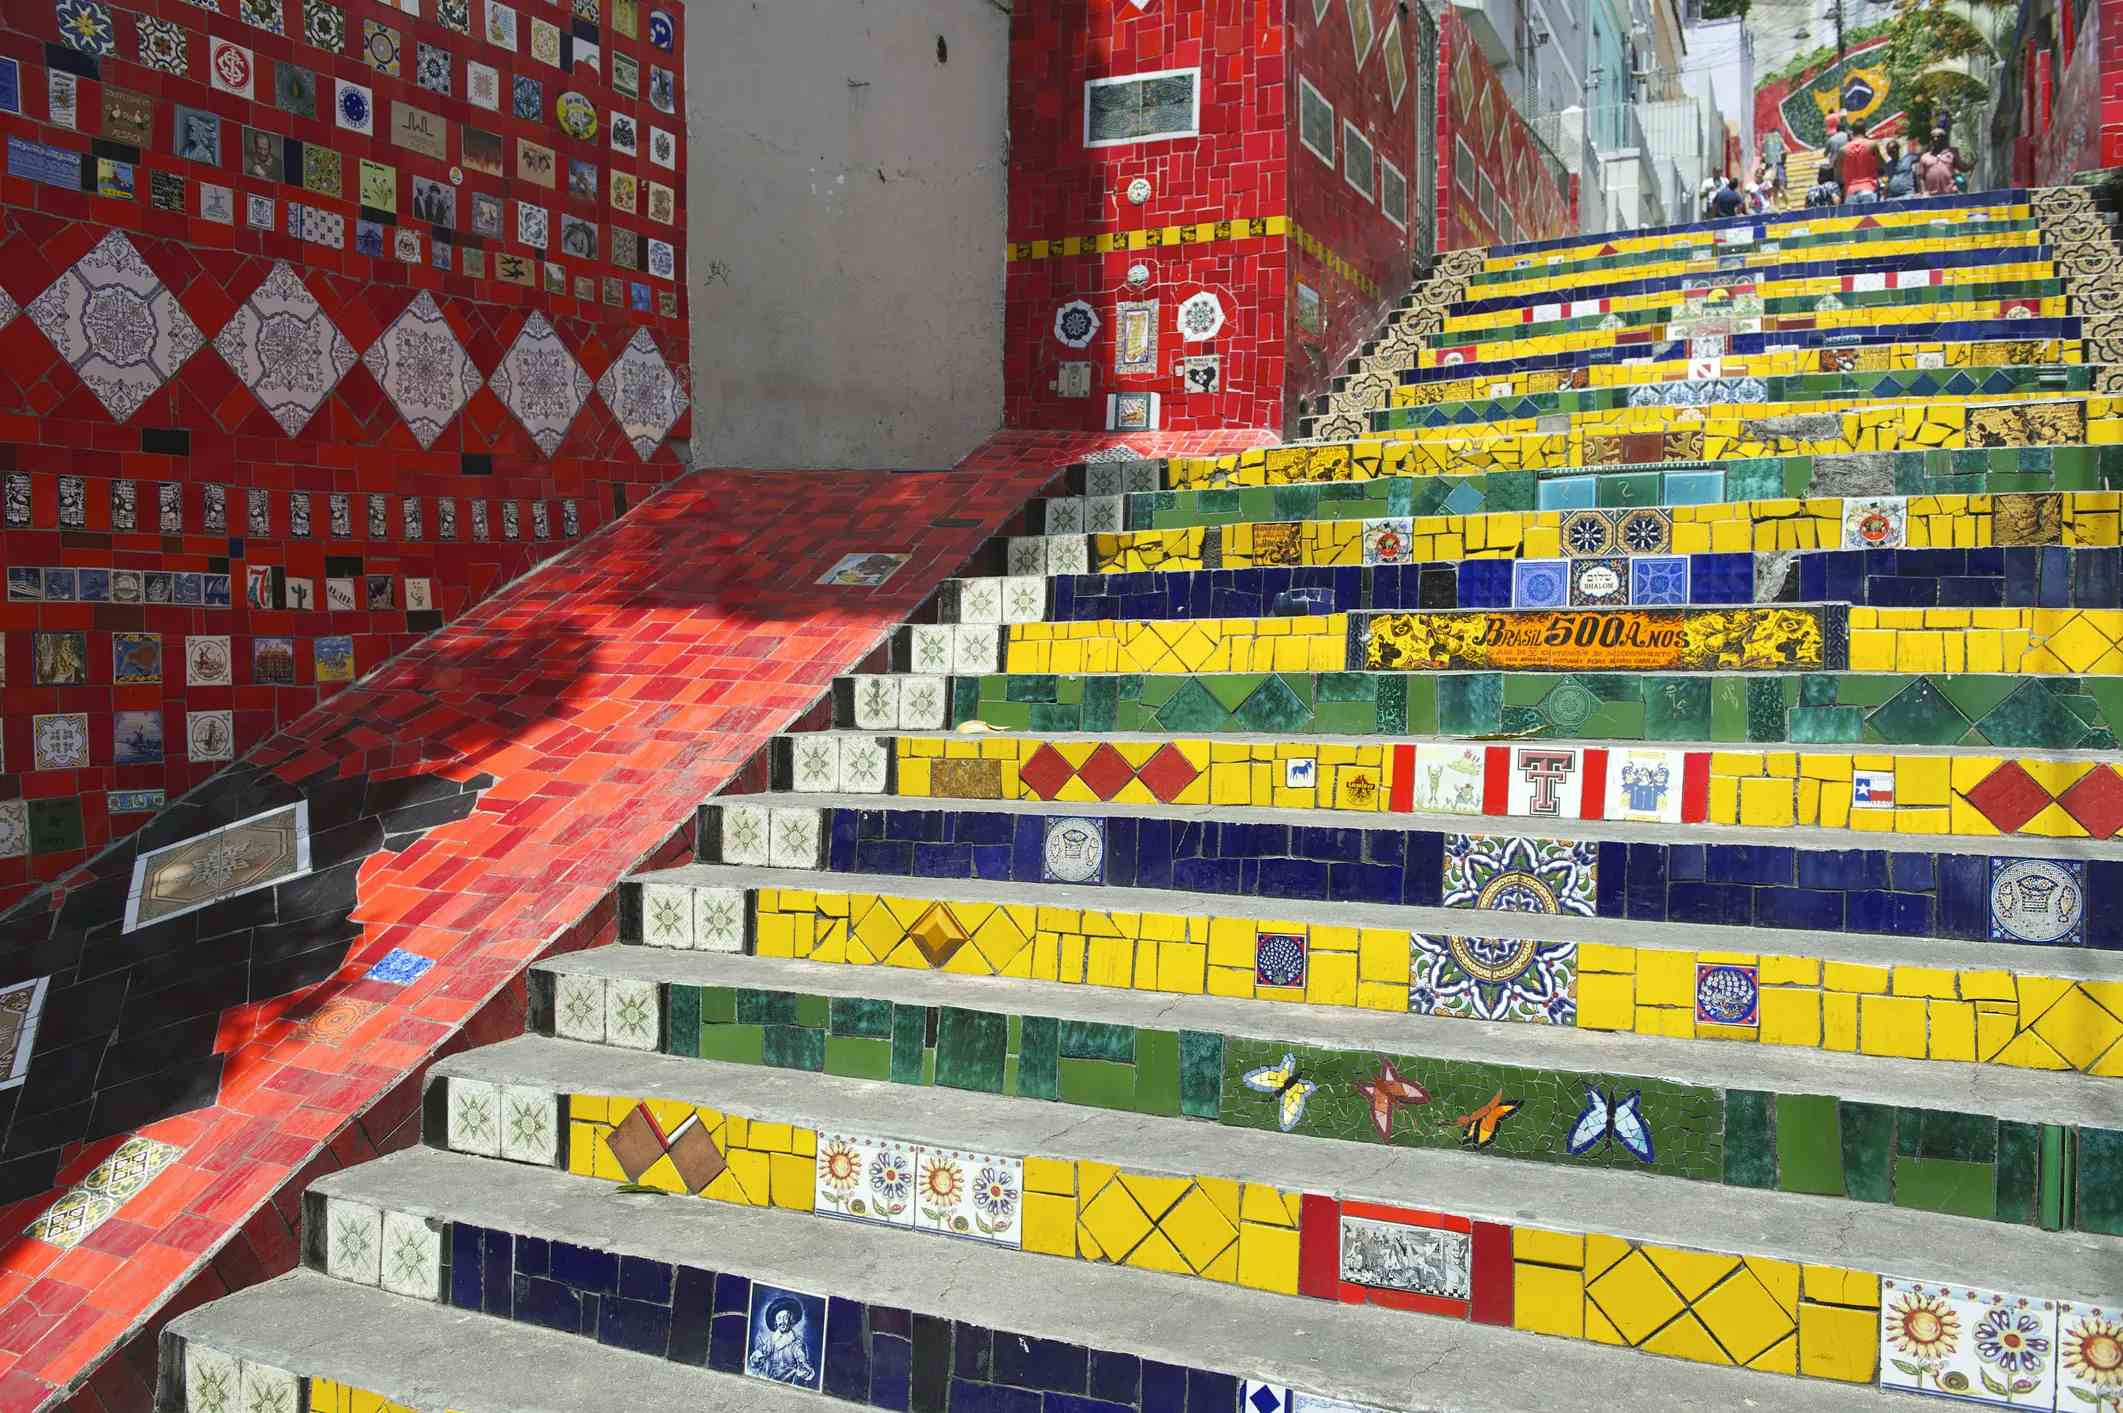 Escalera de Selarón image